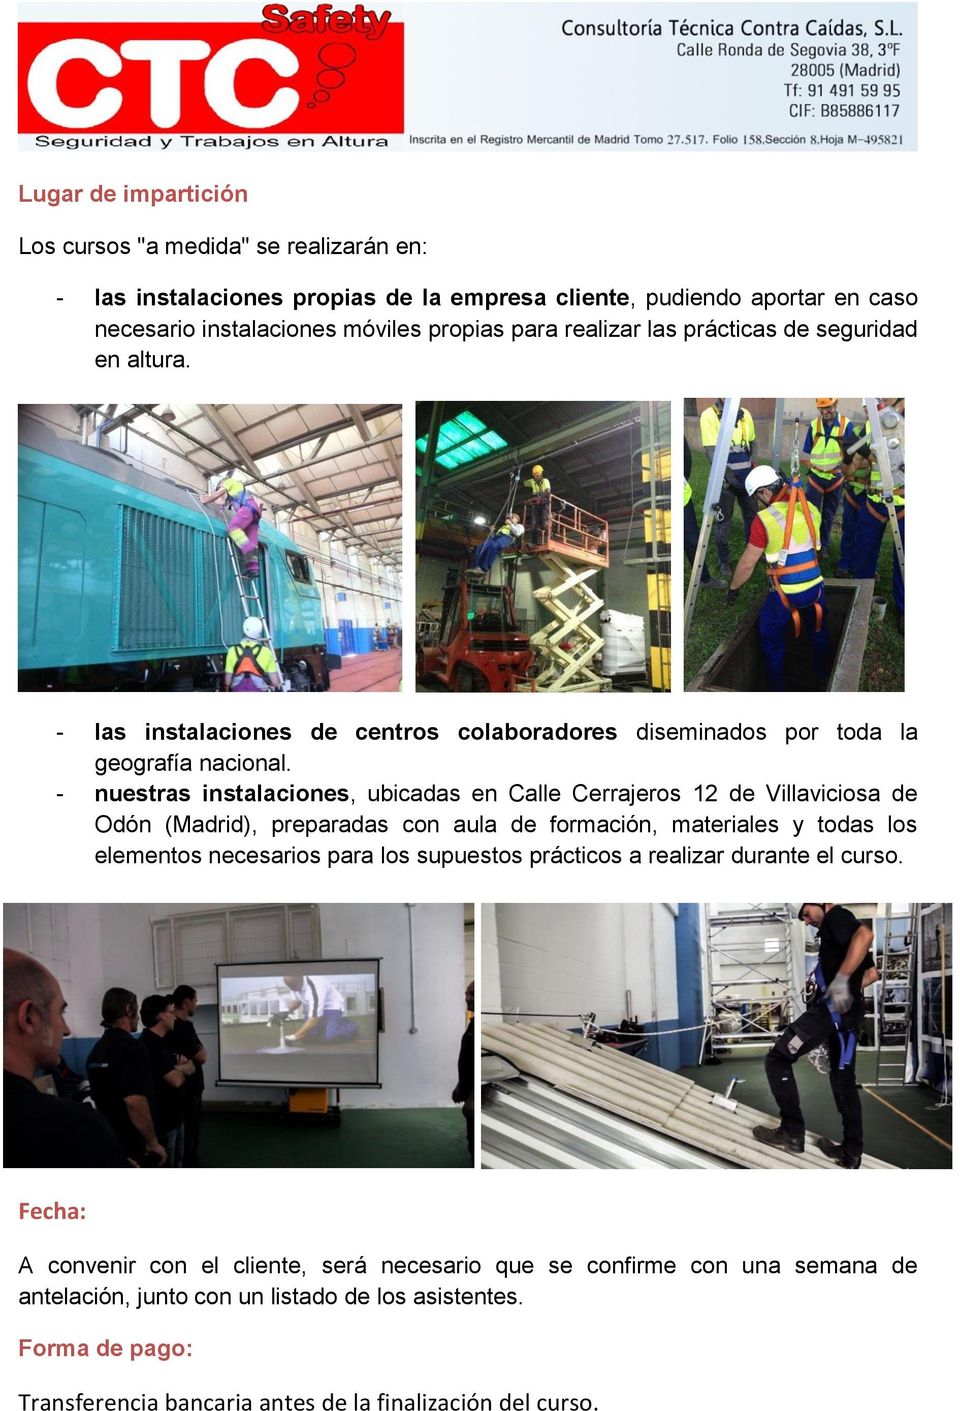 - nuestras instalaciones, ubicadas en Calle Cerrajeros 12 de Villaviciosa de Odón (Madrid), preparadas con aula de formación, materiales y todas los elementos necesarios para los supuestos